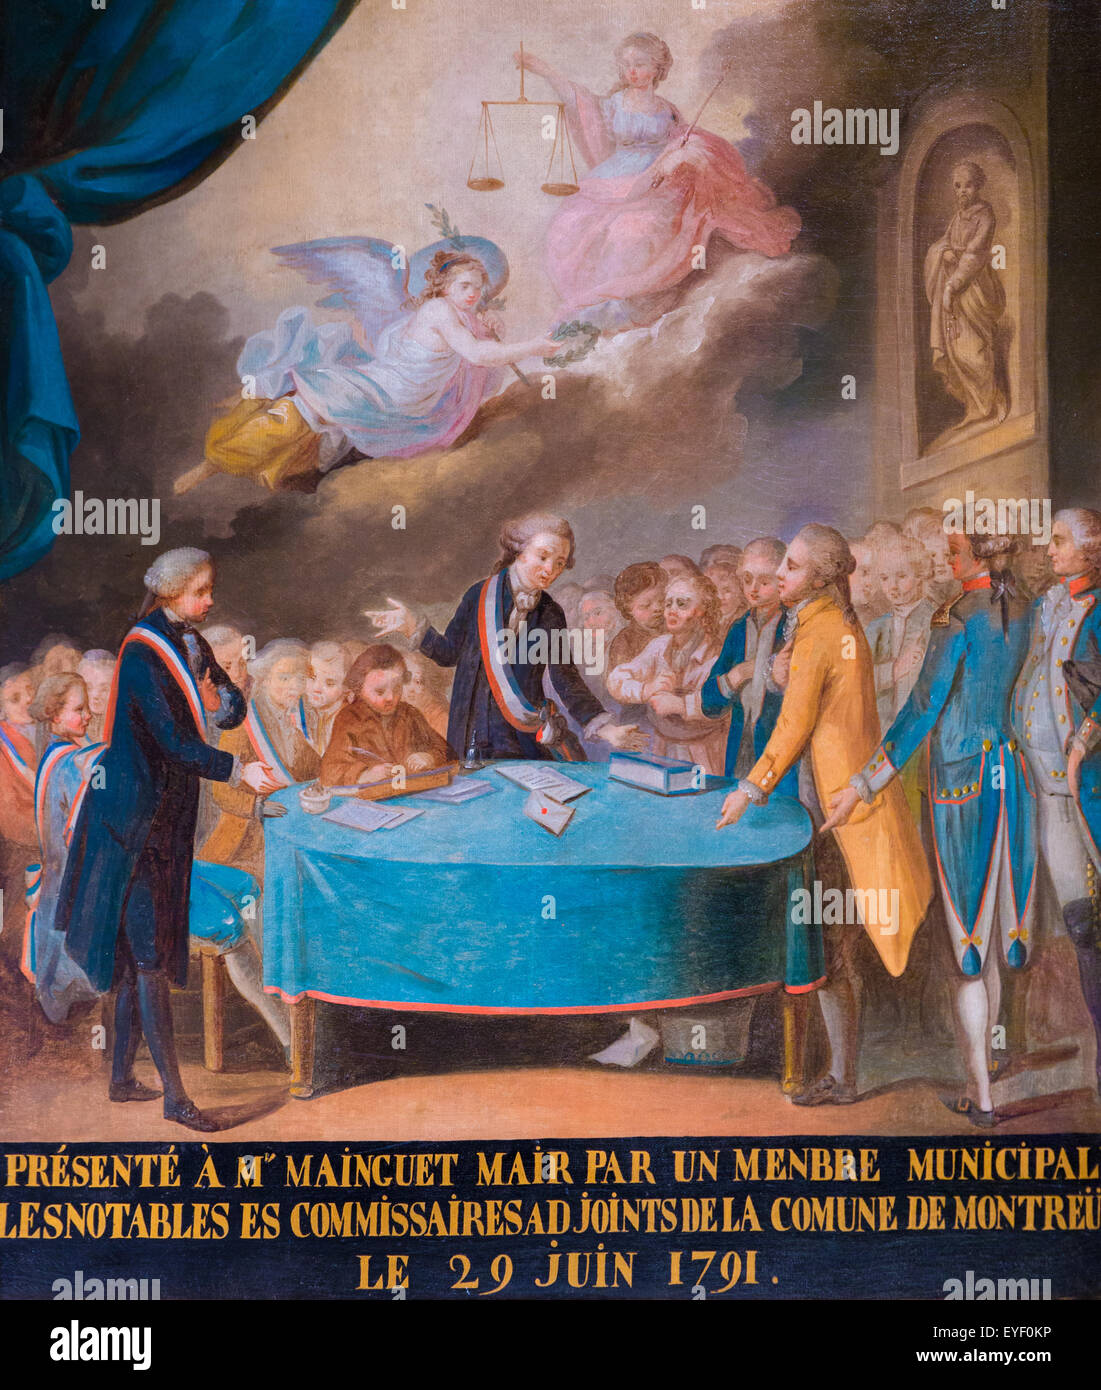 De rendre hommage à son Maire Municipalité Montreuil Mainguet en Juin 29, 1791 07/12/2013 - 18e siècle Collection Banque D'Images